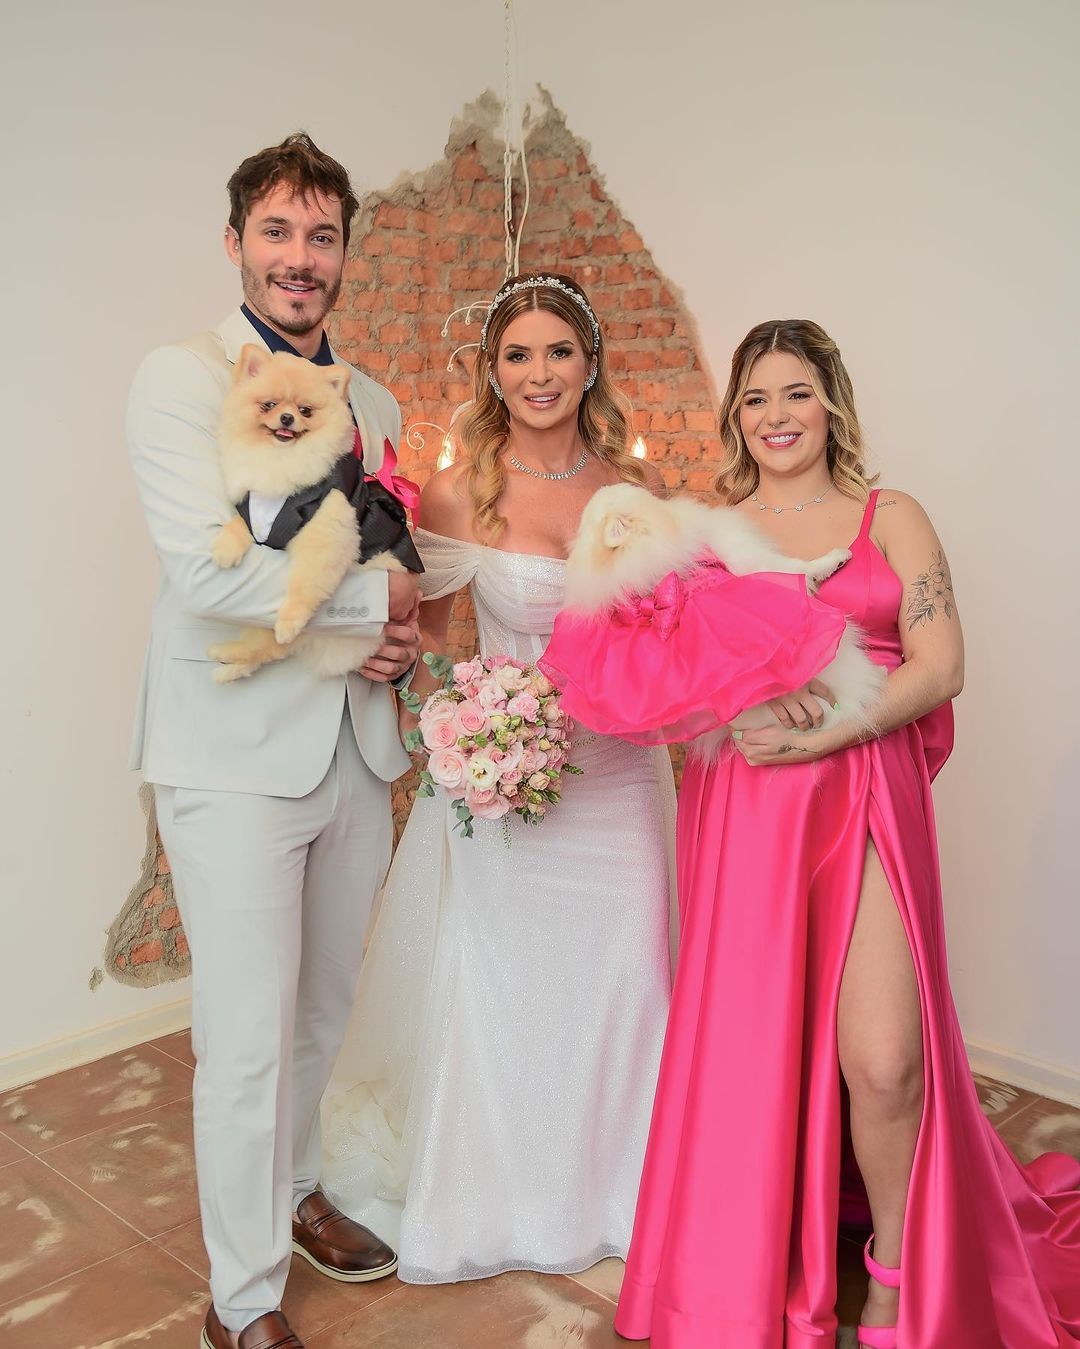 Viih Tube abre álbum de fotos do casamento da mãe, Viviane, ao lado de Eliezer e da família (Foto: @cassioziello)